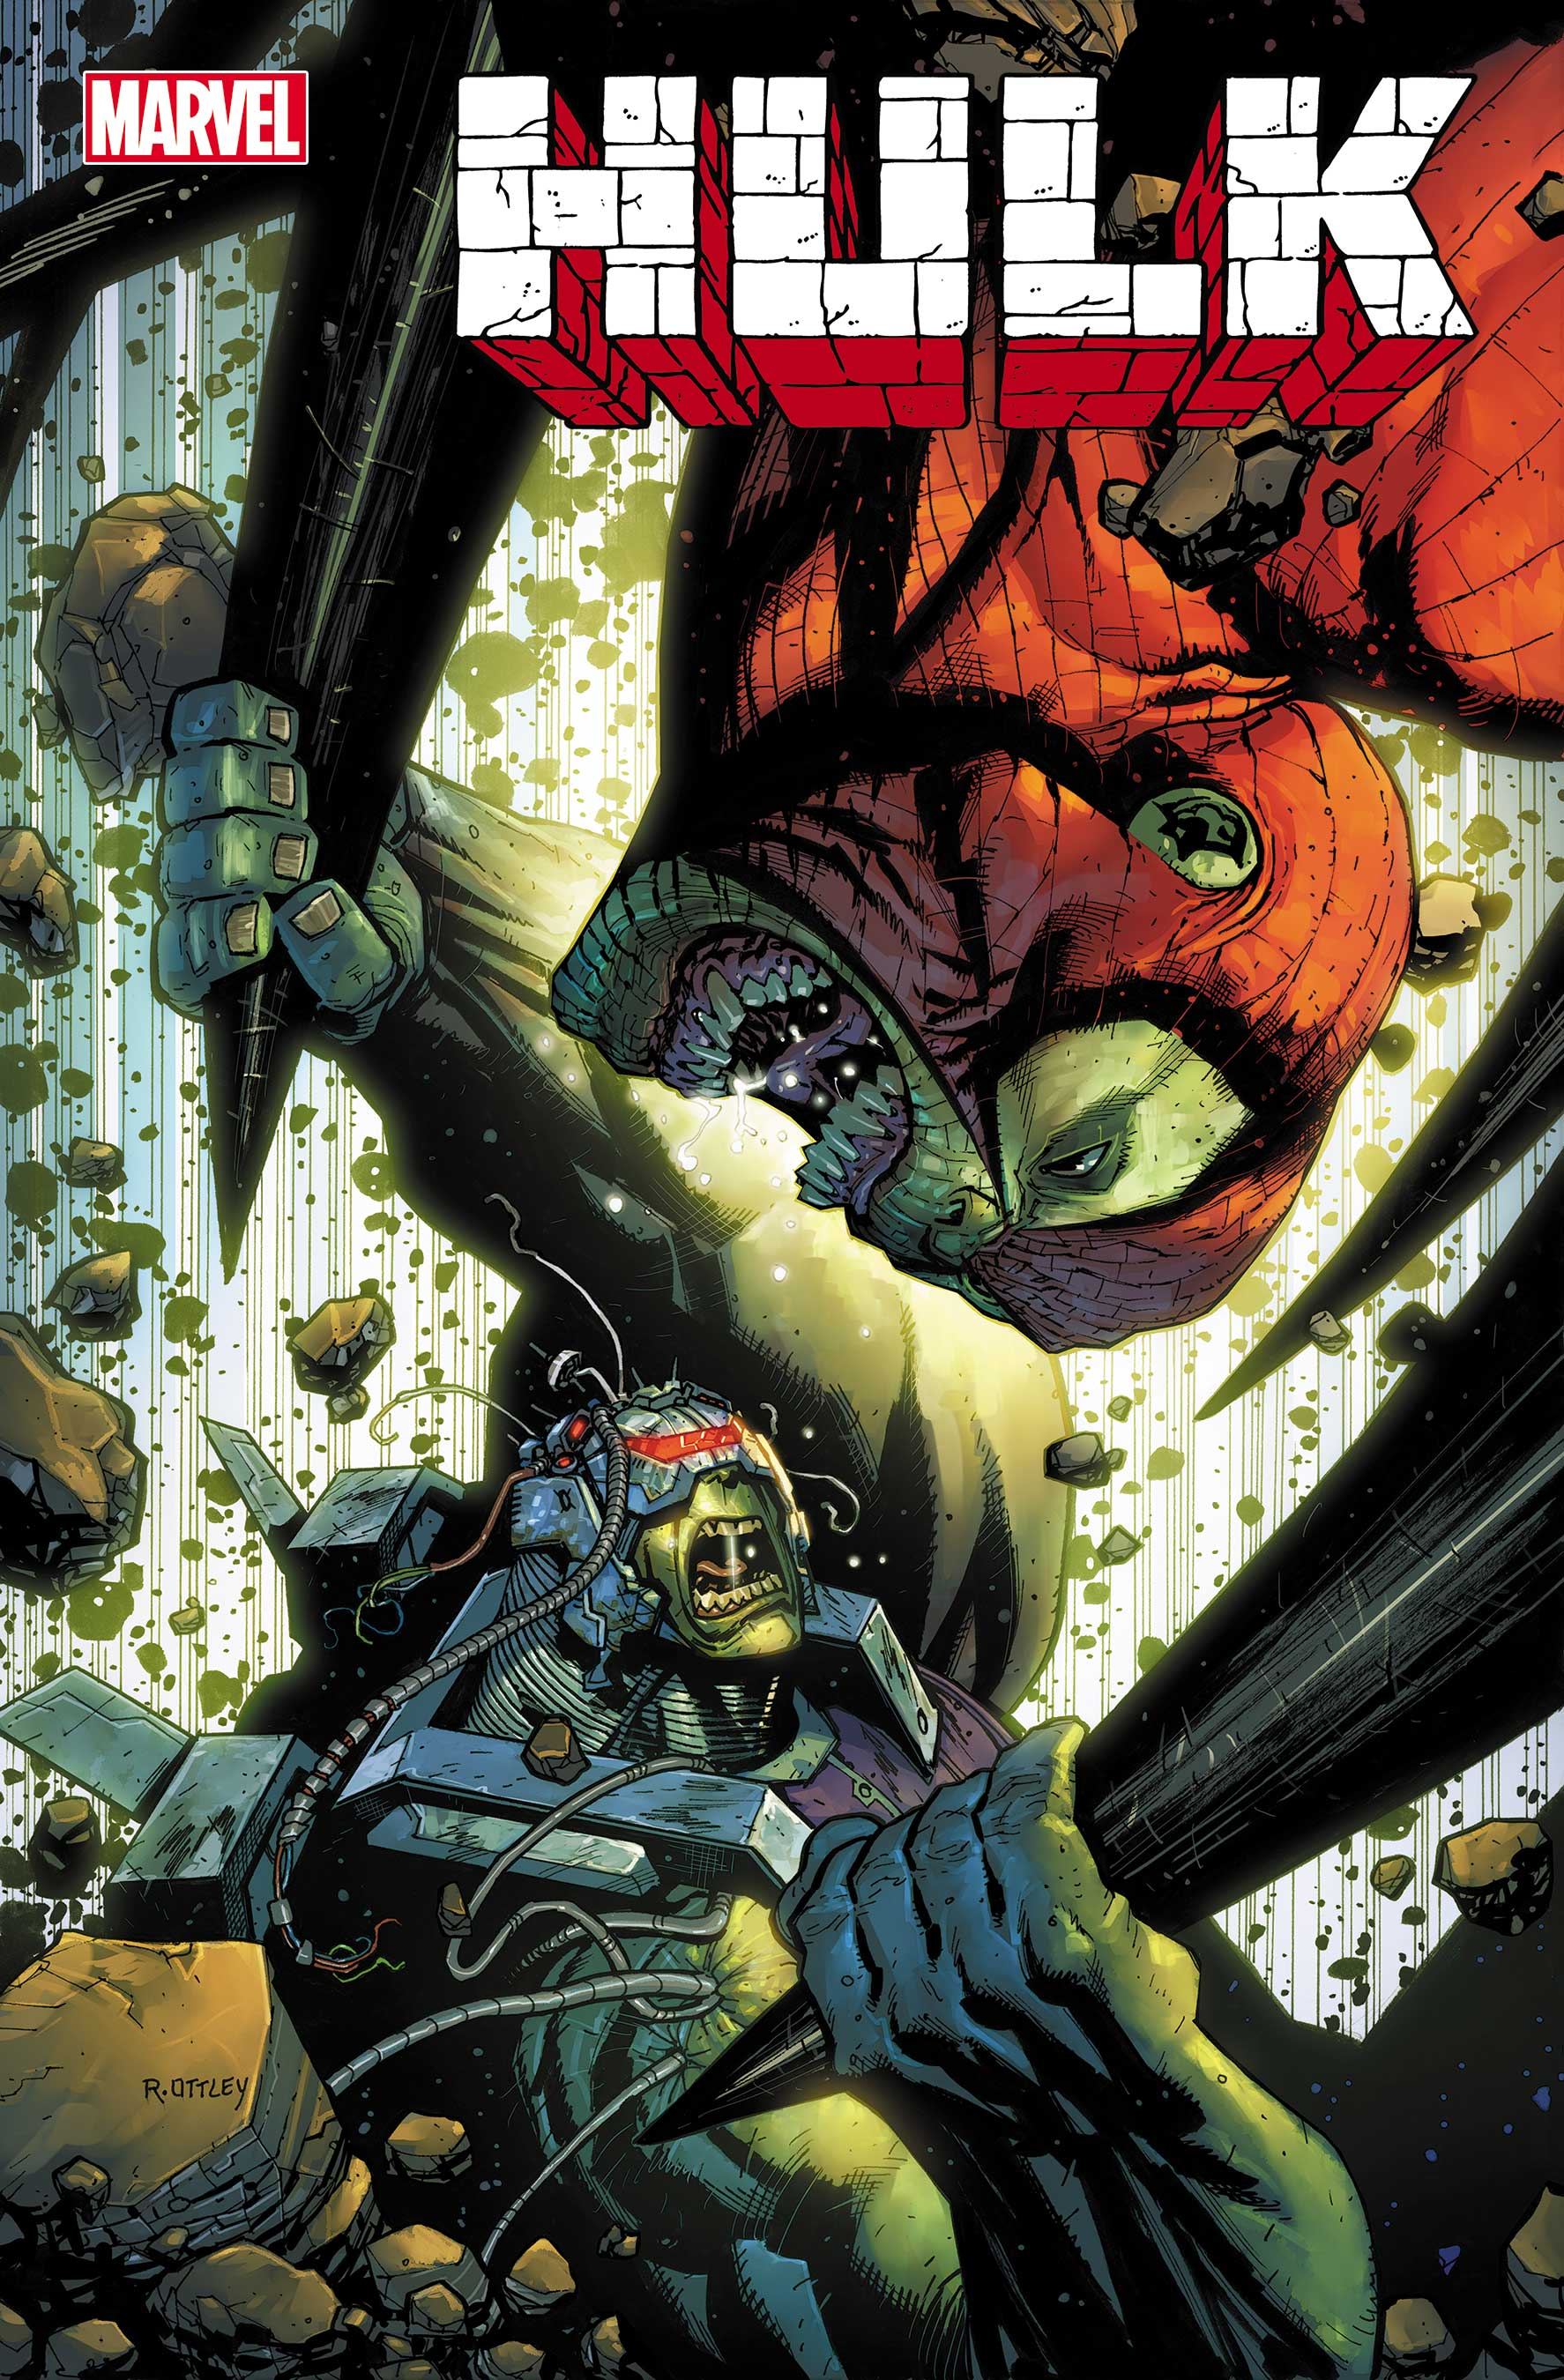 Spider-Man’s Hulk Form Just Redefined Marvel’s Spider-Verse